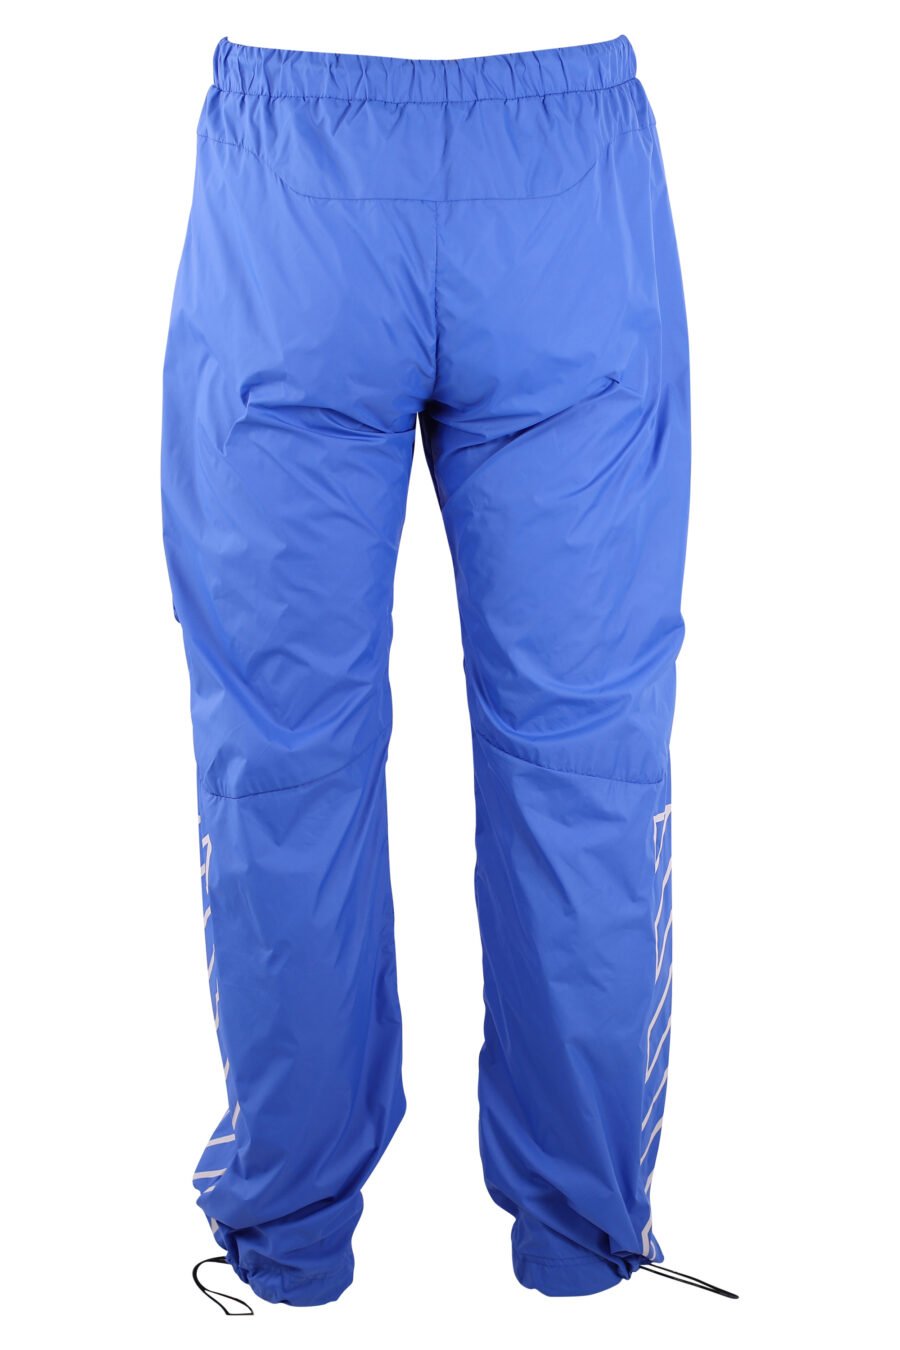 Pantalon cargo azul logo blanco "Diagonals" - IMG 3189